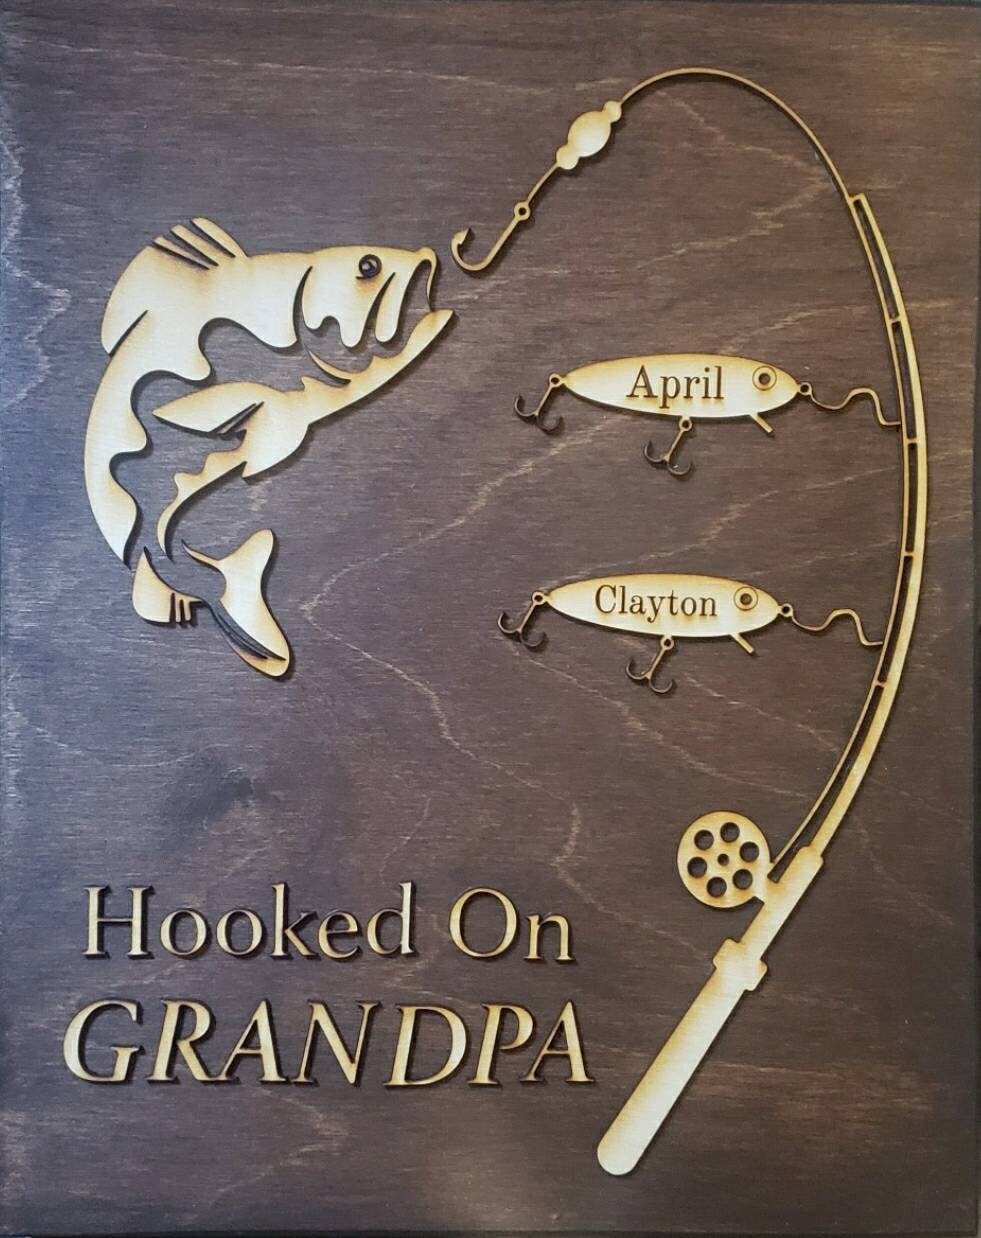 Hooked on Grandpa